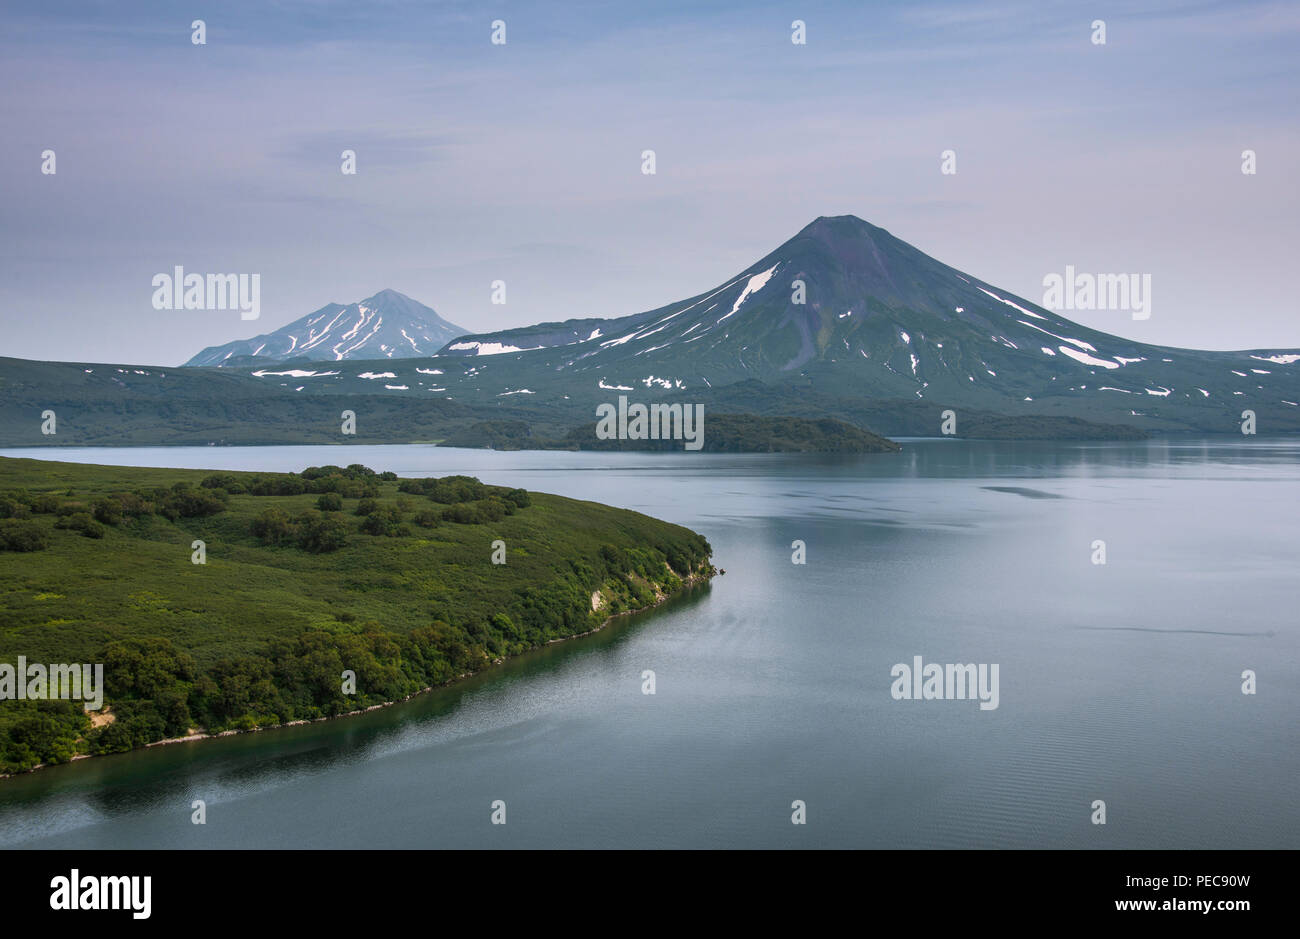 Ilyinsky volcano, Kurile lake, Kamchatka, Russia Stock Photo